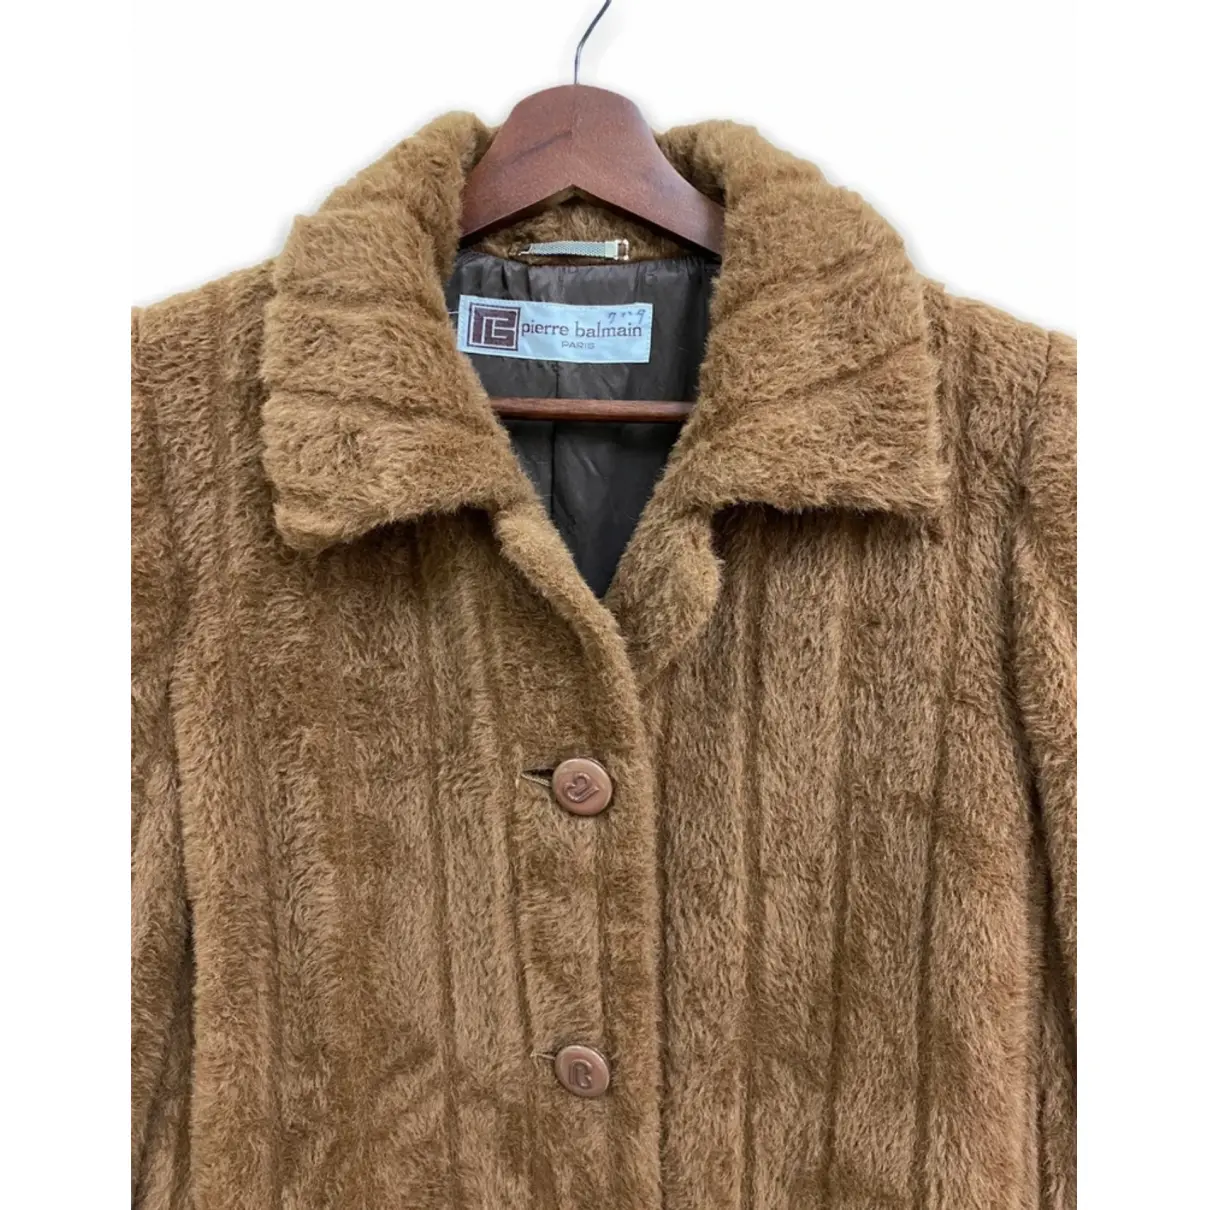 Wool coat Pierre Balmain - Vintage